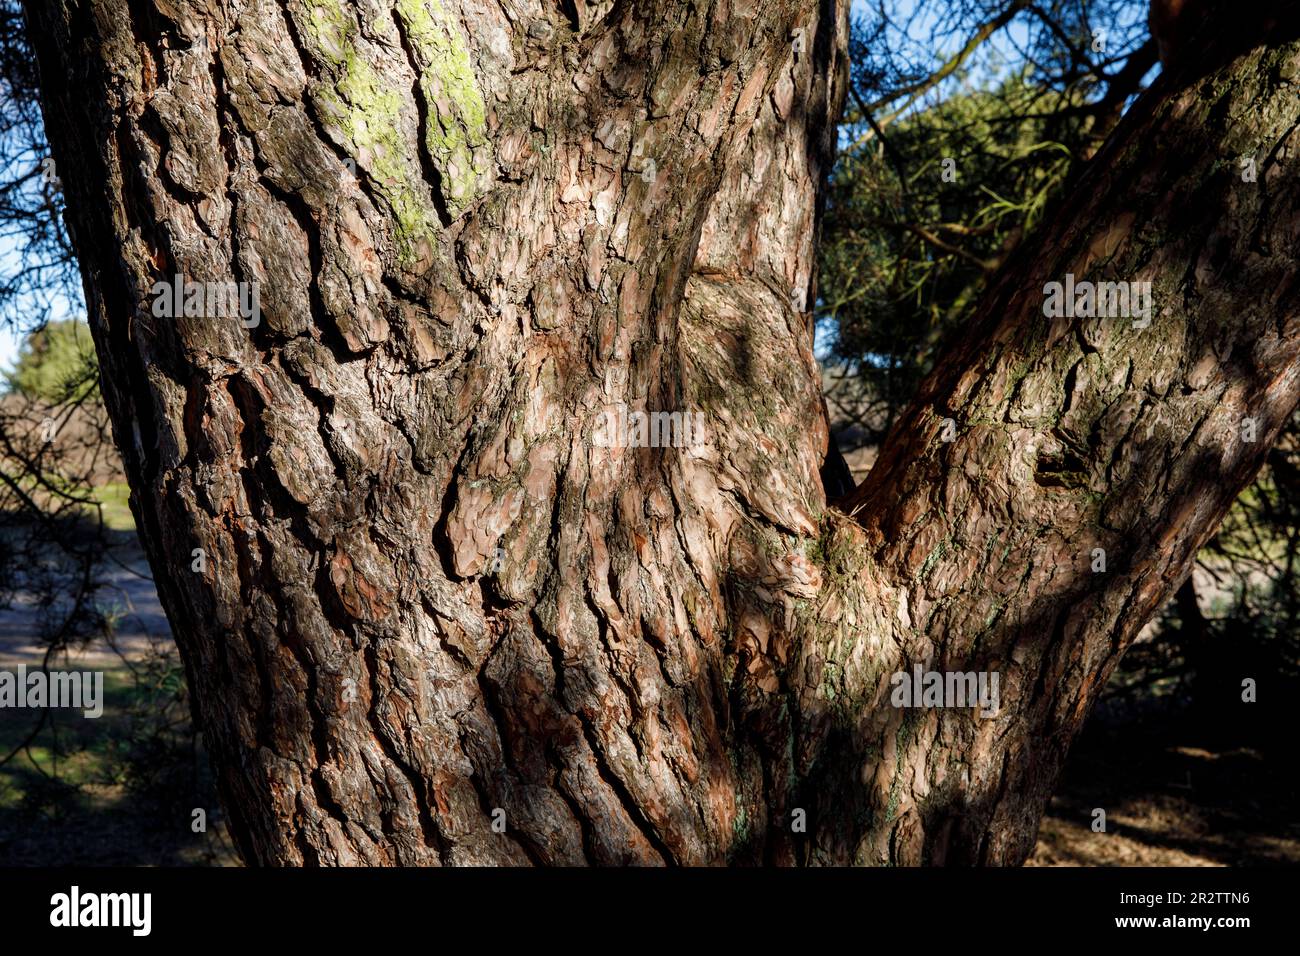 trunk and bark of an old pine tree in the Westruper heath, Haltern am See, North Rhine-Westphalia, Germany.   Stamm und Rinde einer alten Kiefer in de Stock Photo